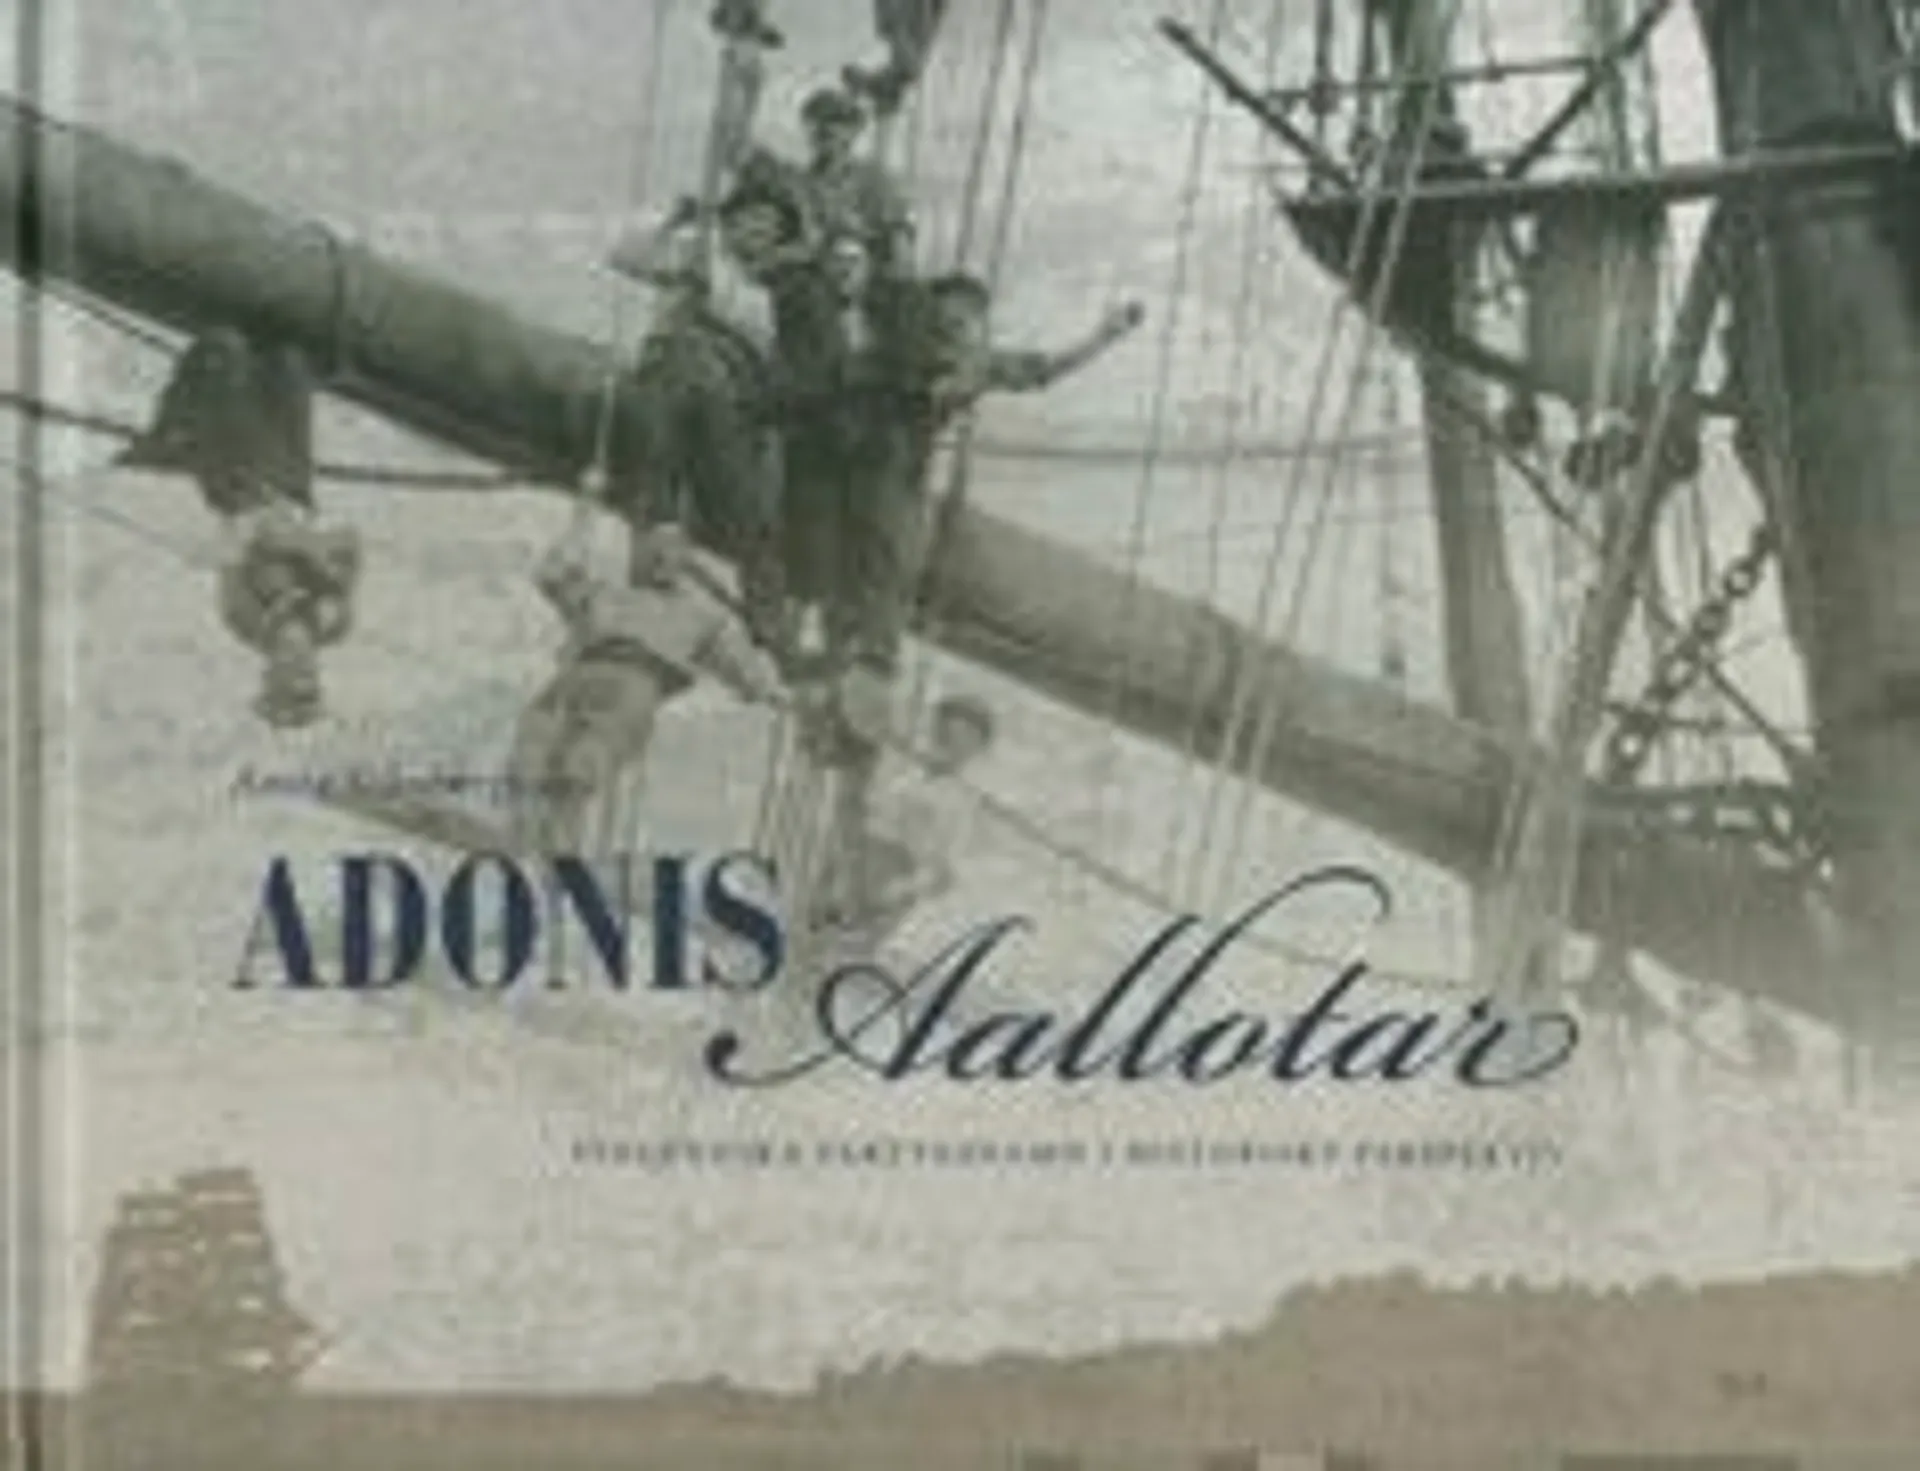 Schybergson, Adonis och Aallotar - finländska fartygsnamn i historiskt perspektiv